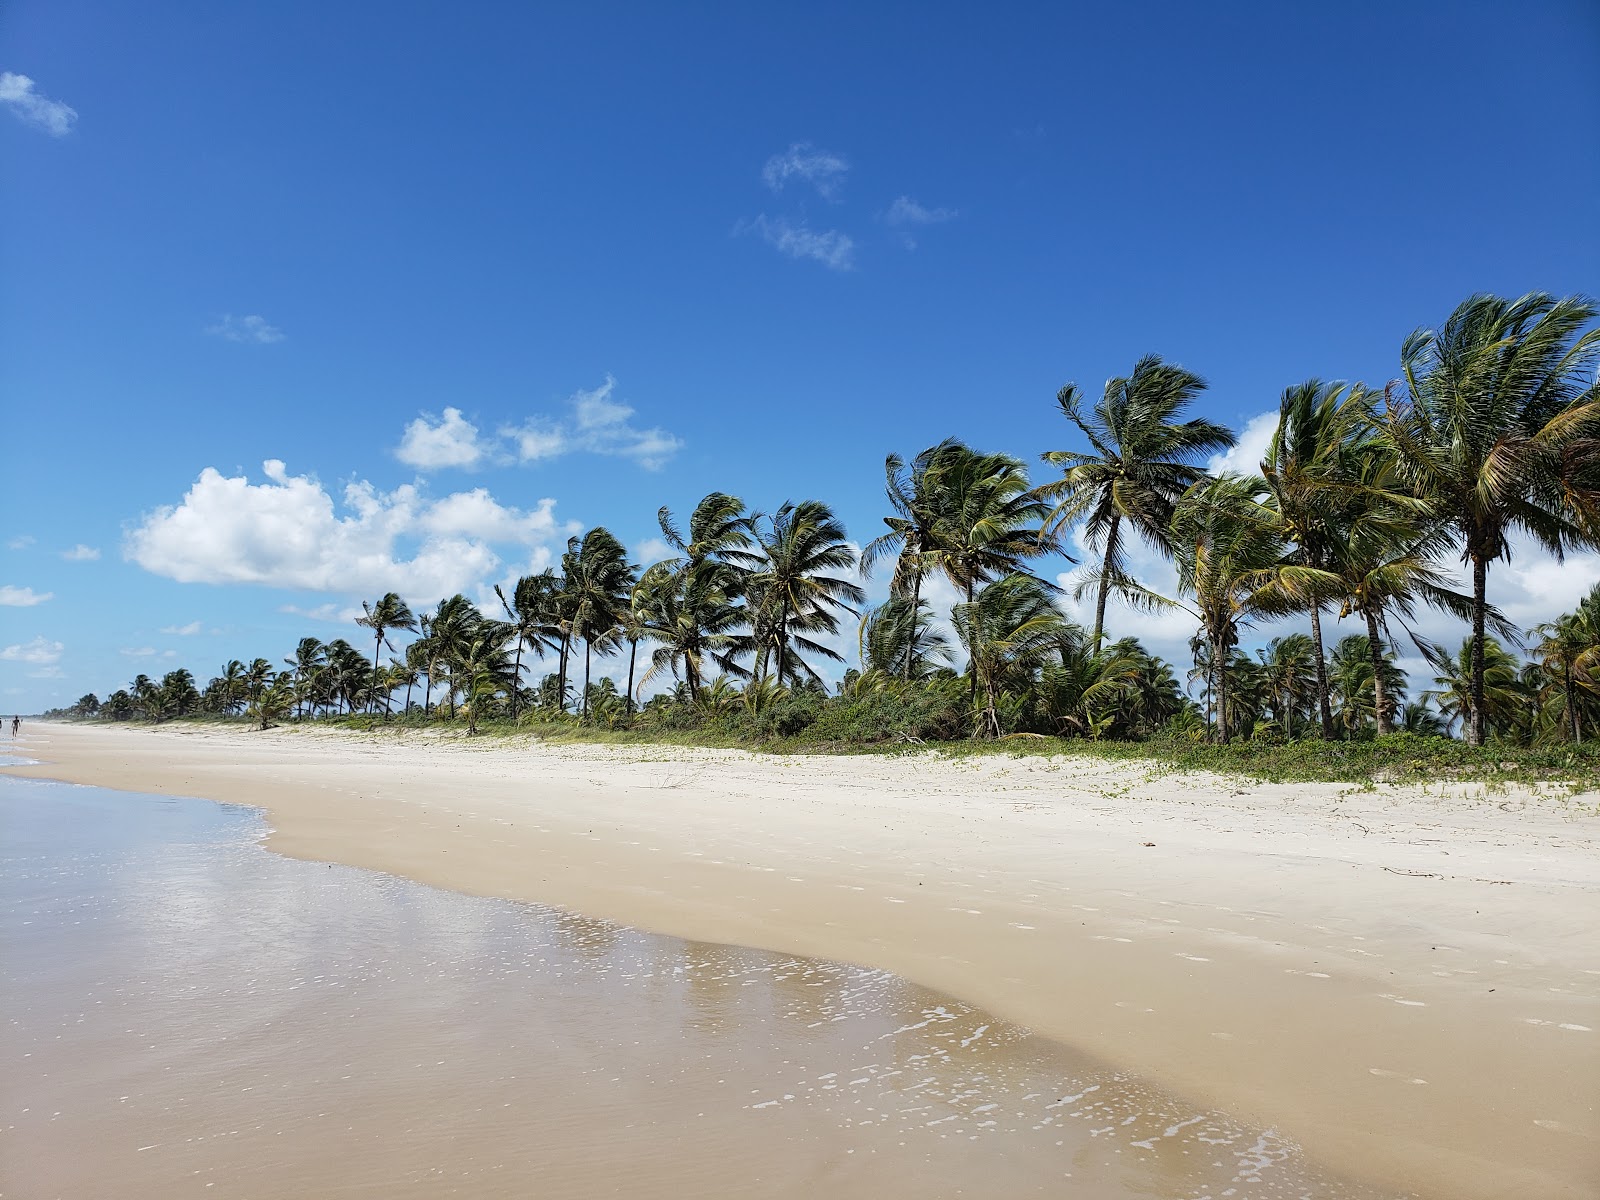 Foto af Praia da ilha de Comandatuba - populært sted blandt afslapningskendere